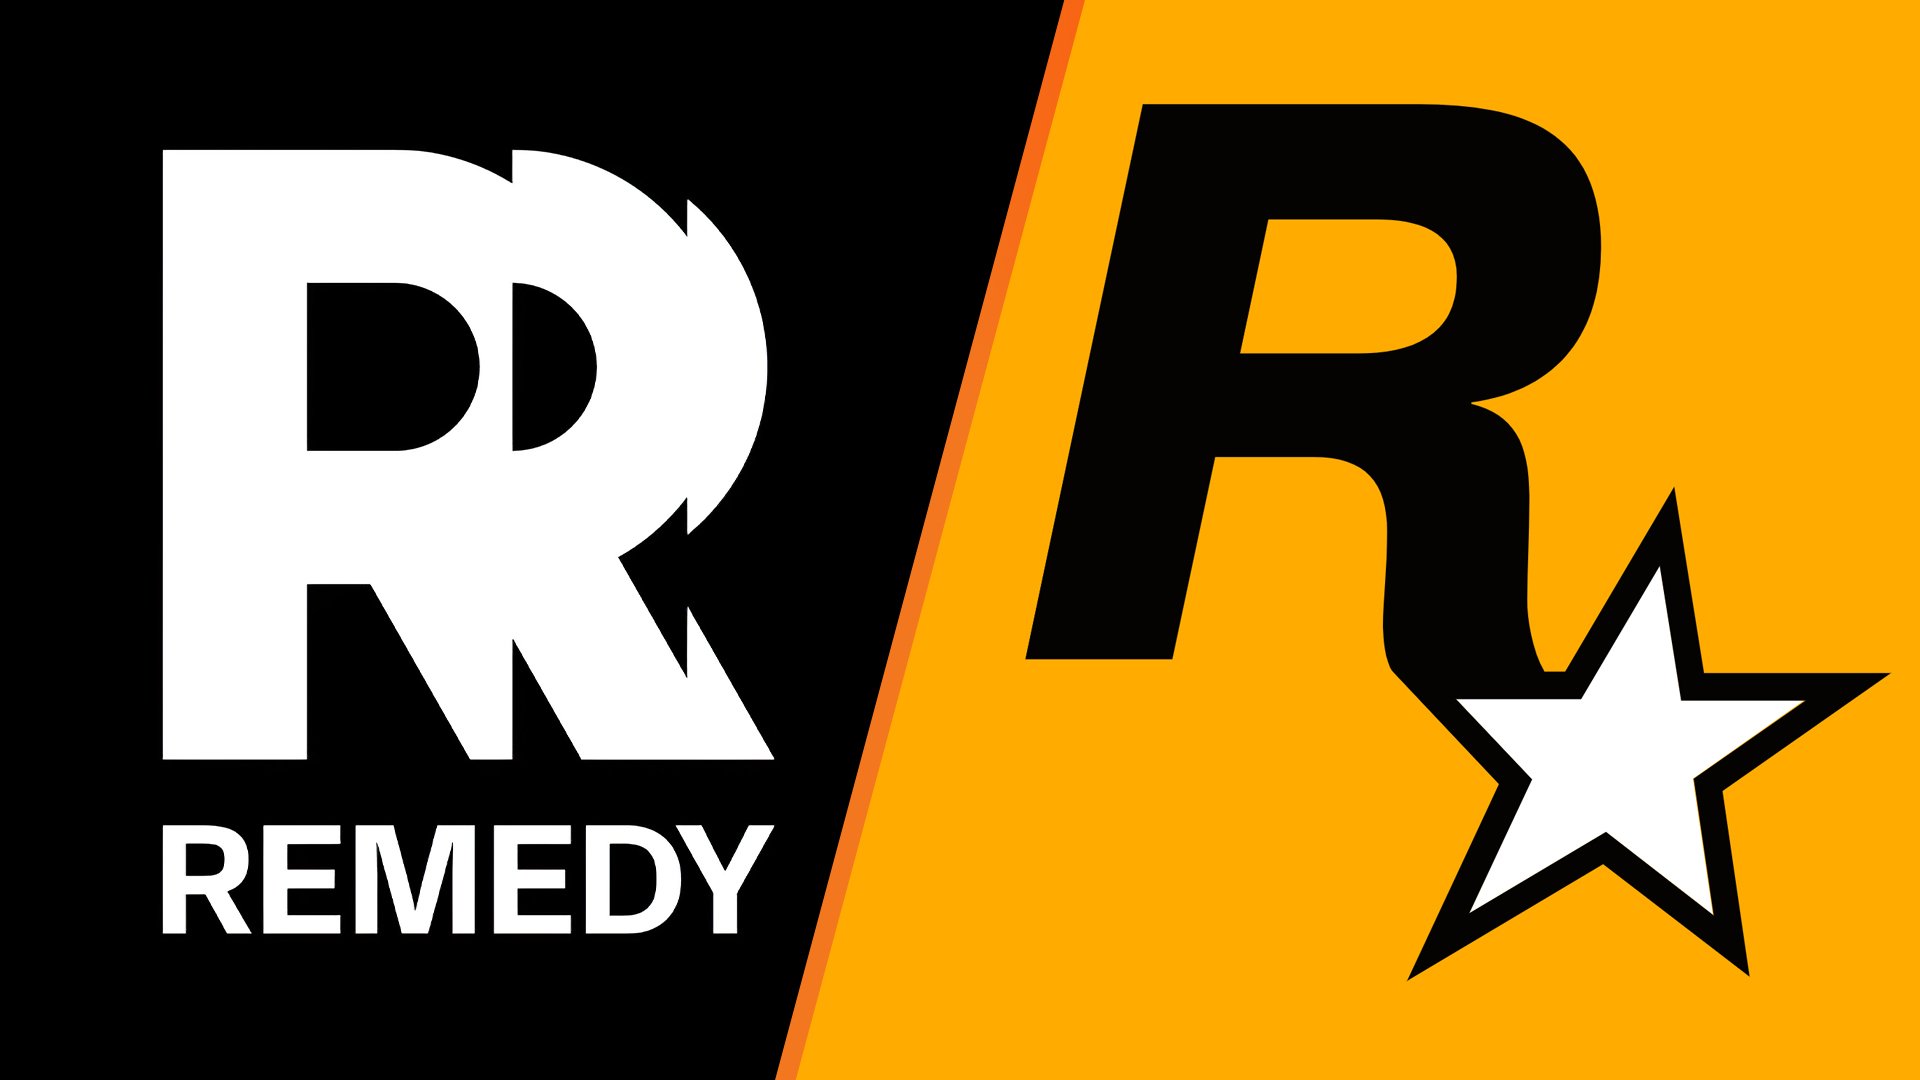 A Take-Two entrou com uma disputa de marca registrada sobre o novo logotipo da Remedy, dizendo que é muito semelhante ao logotipo da Rockstar.